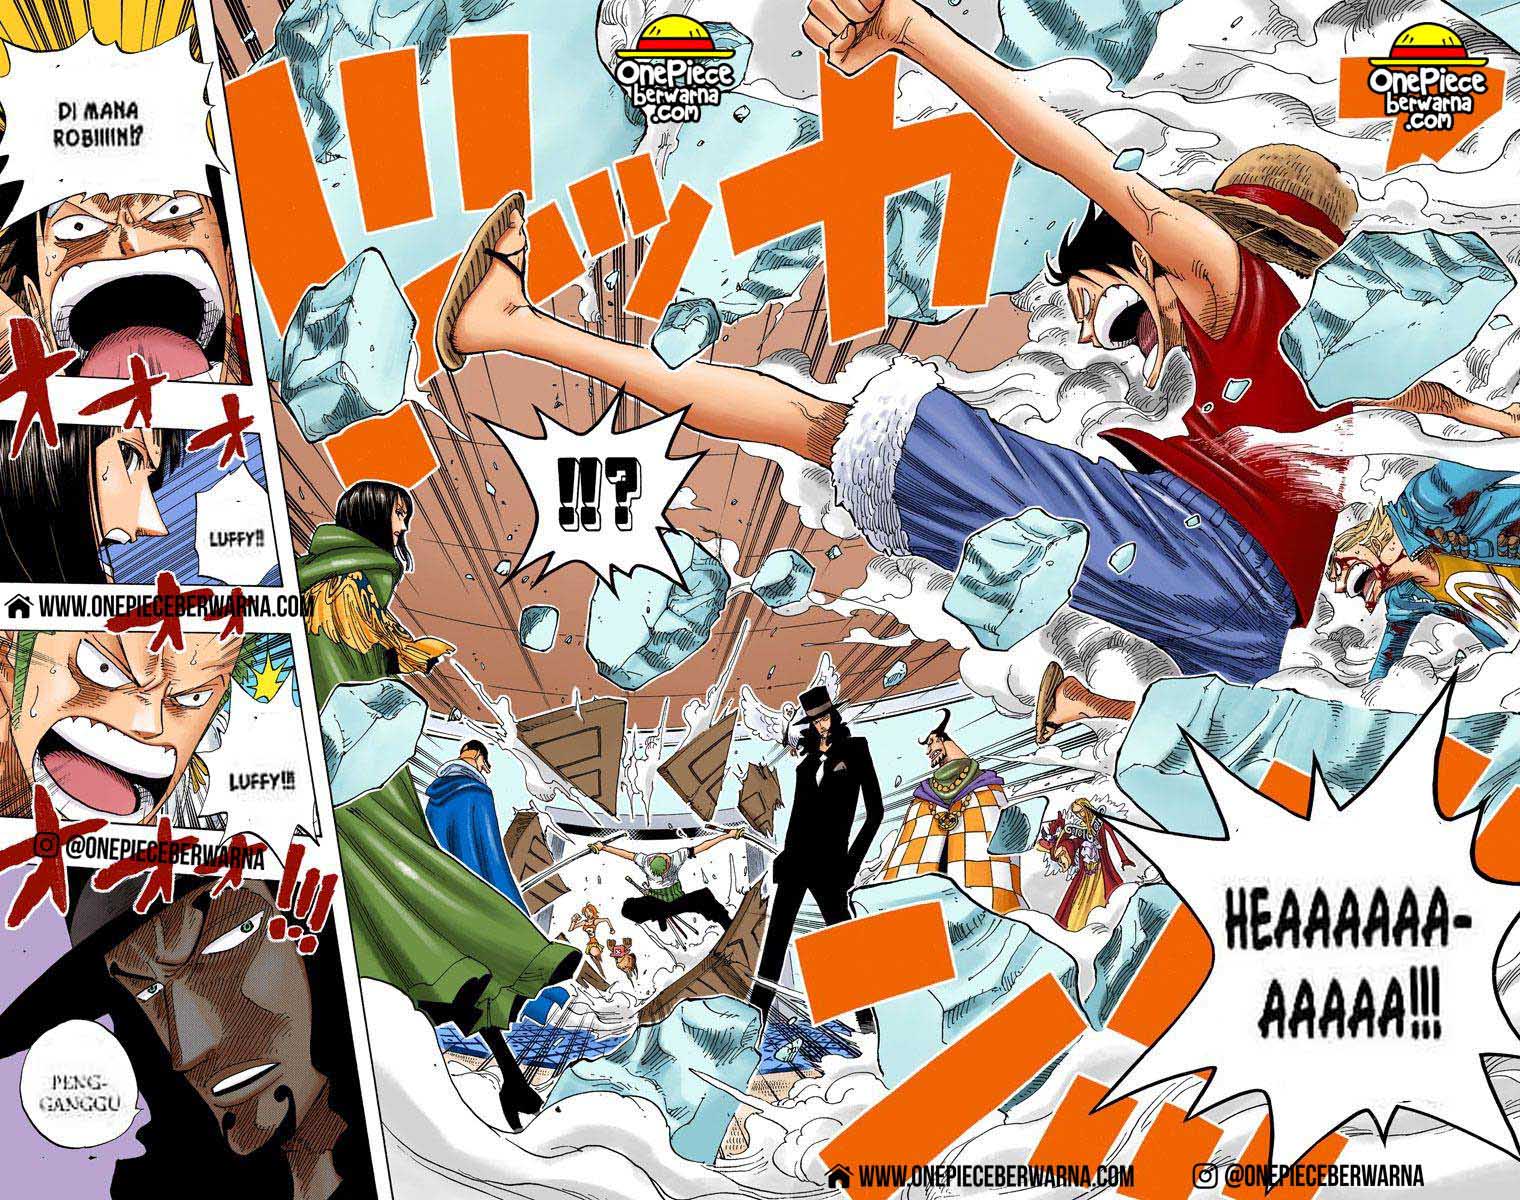 One Piece Berwarna Chapter 346